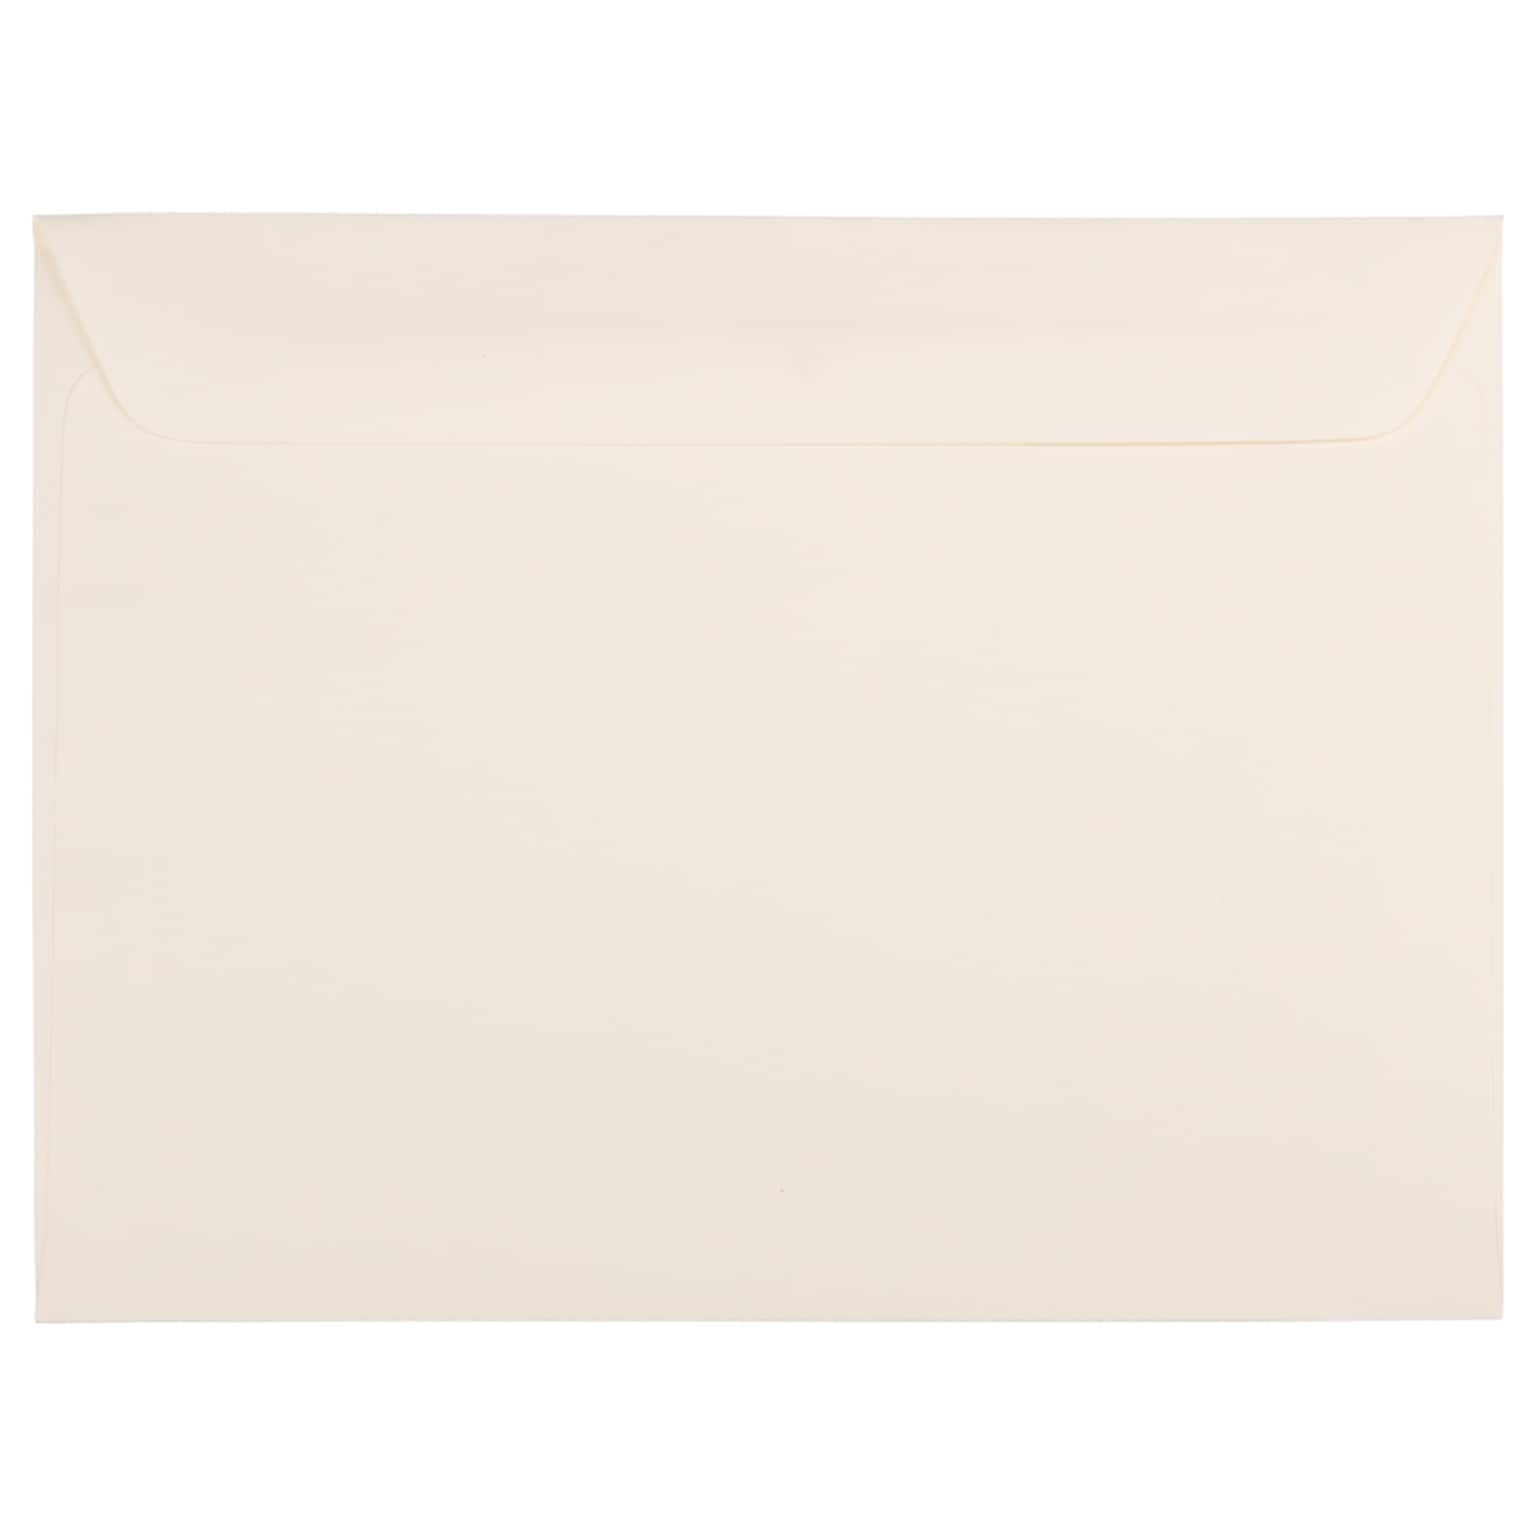 JAM Paper® 9 x 12 Booklet Strathmore Envelopes, Ivory Wove, 25/Pack (194504)